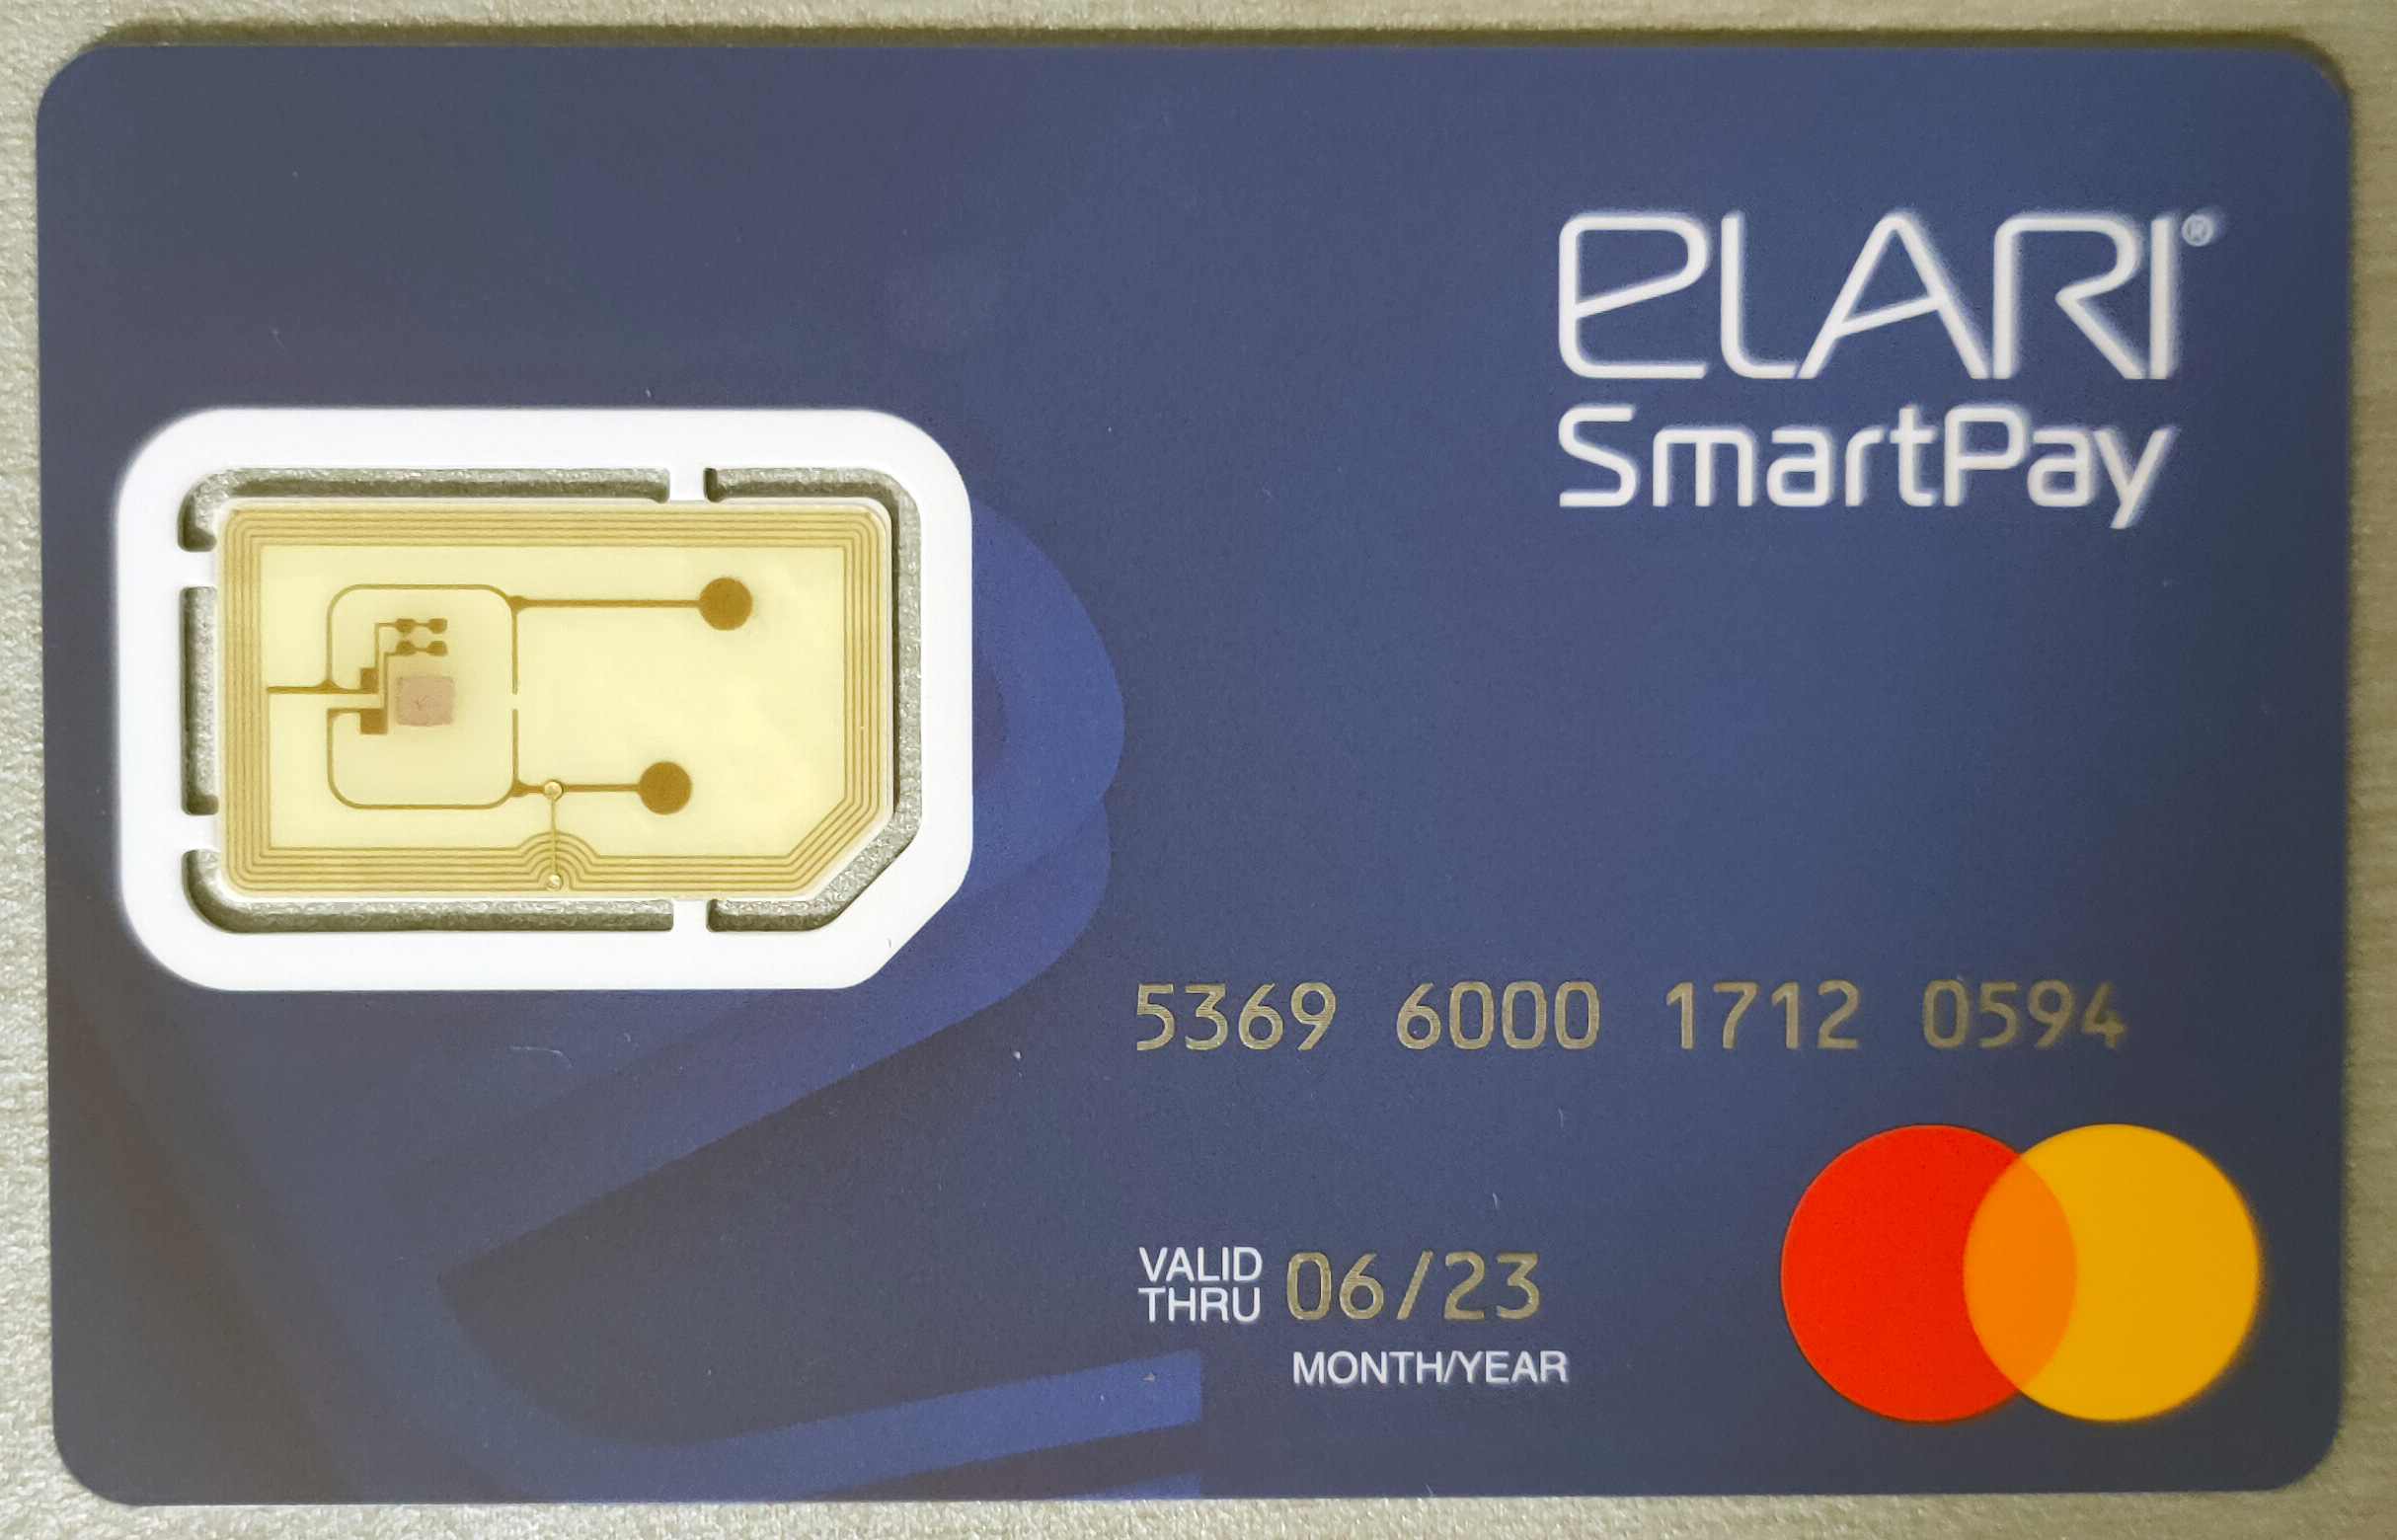 Smartpay. Power Card Elari. Браслет Elari SMARTPAY кошелек на руке, для бесконтактных платежей Red. Может ли размагнититься банковская карта от телефона.